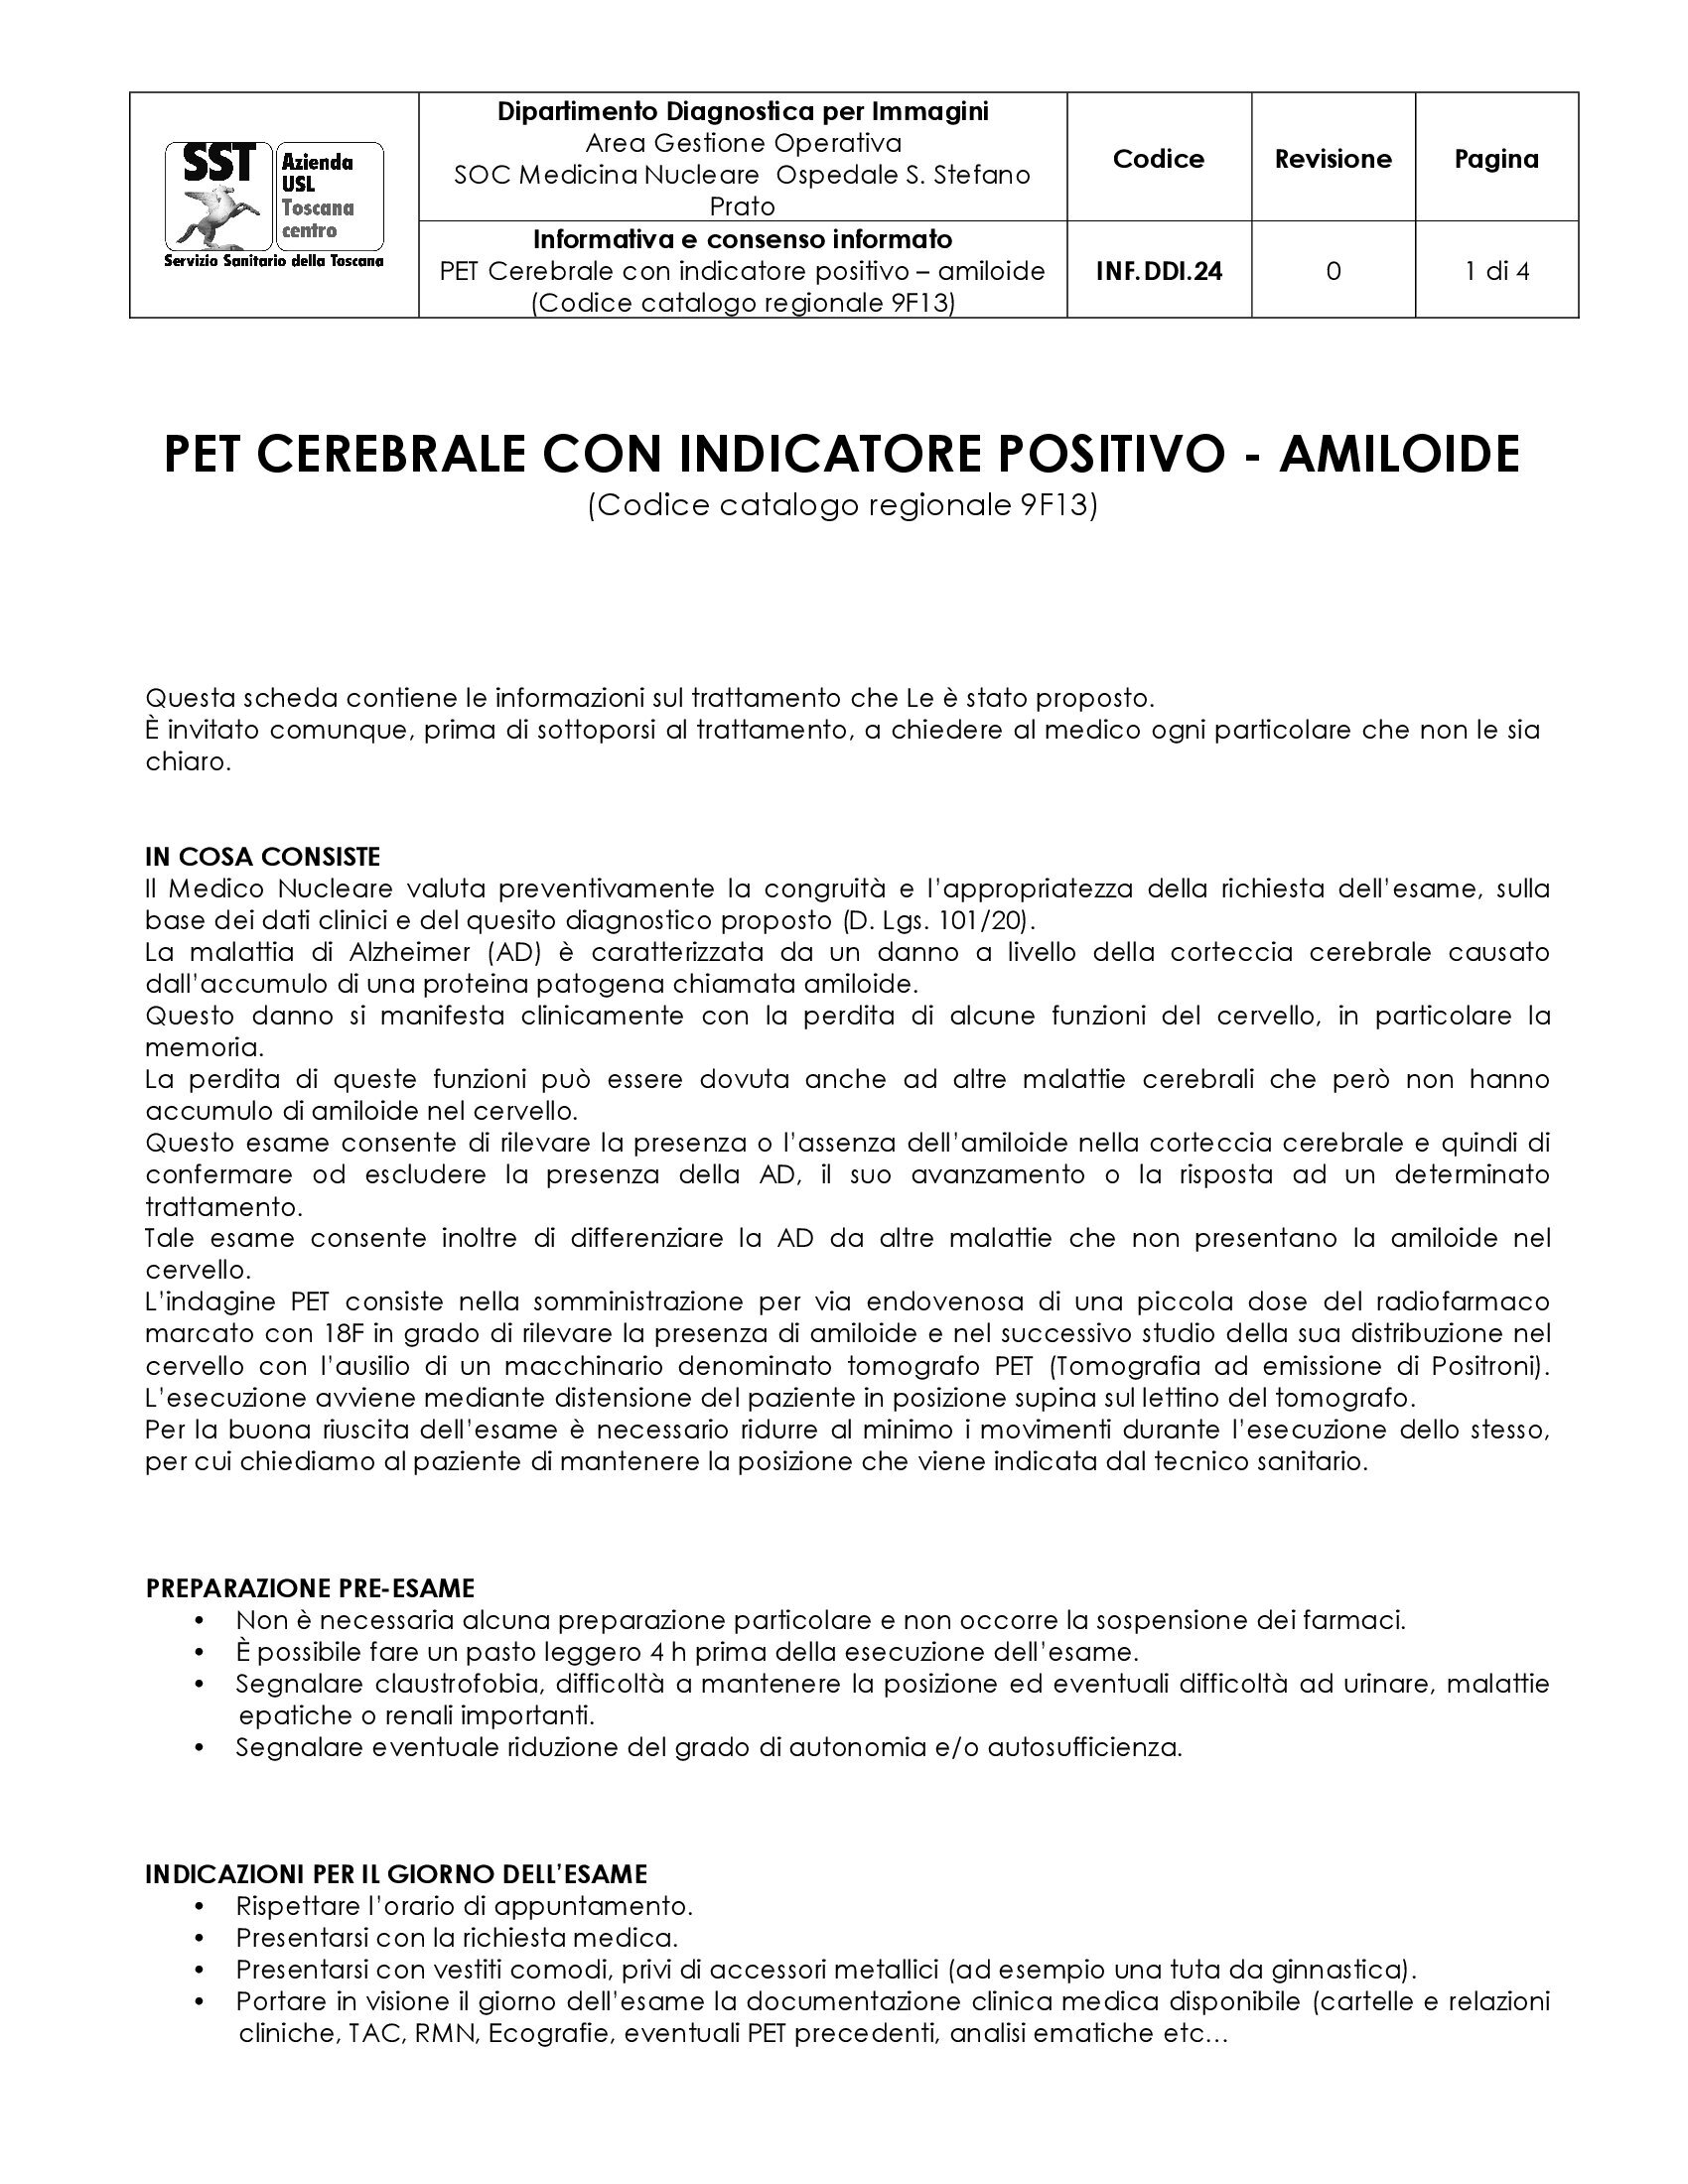 INF.DDI.24 PET Cerebrale con indicatore positivo – amiloide (Codice catalogo regionale 9F13)